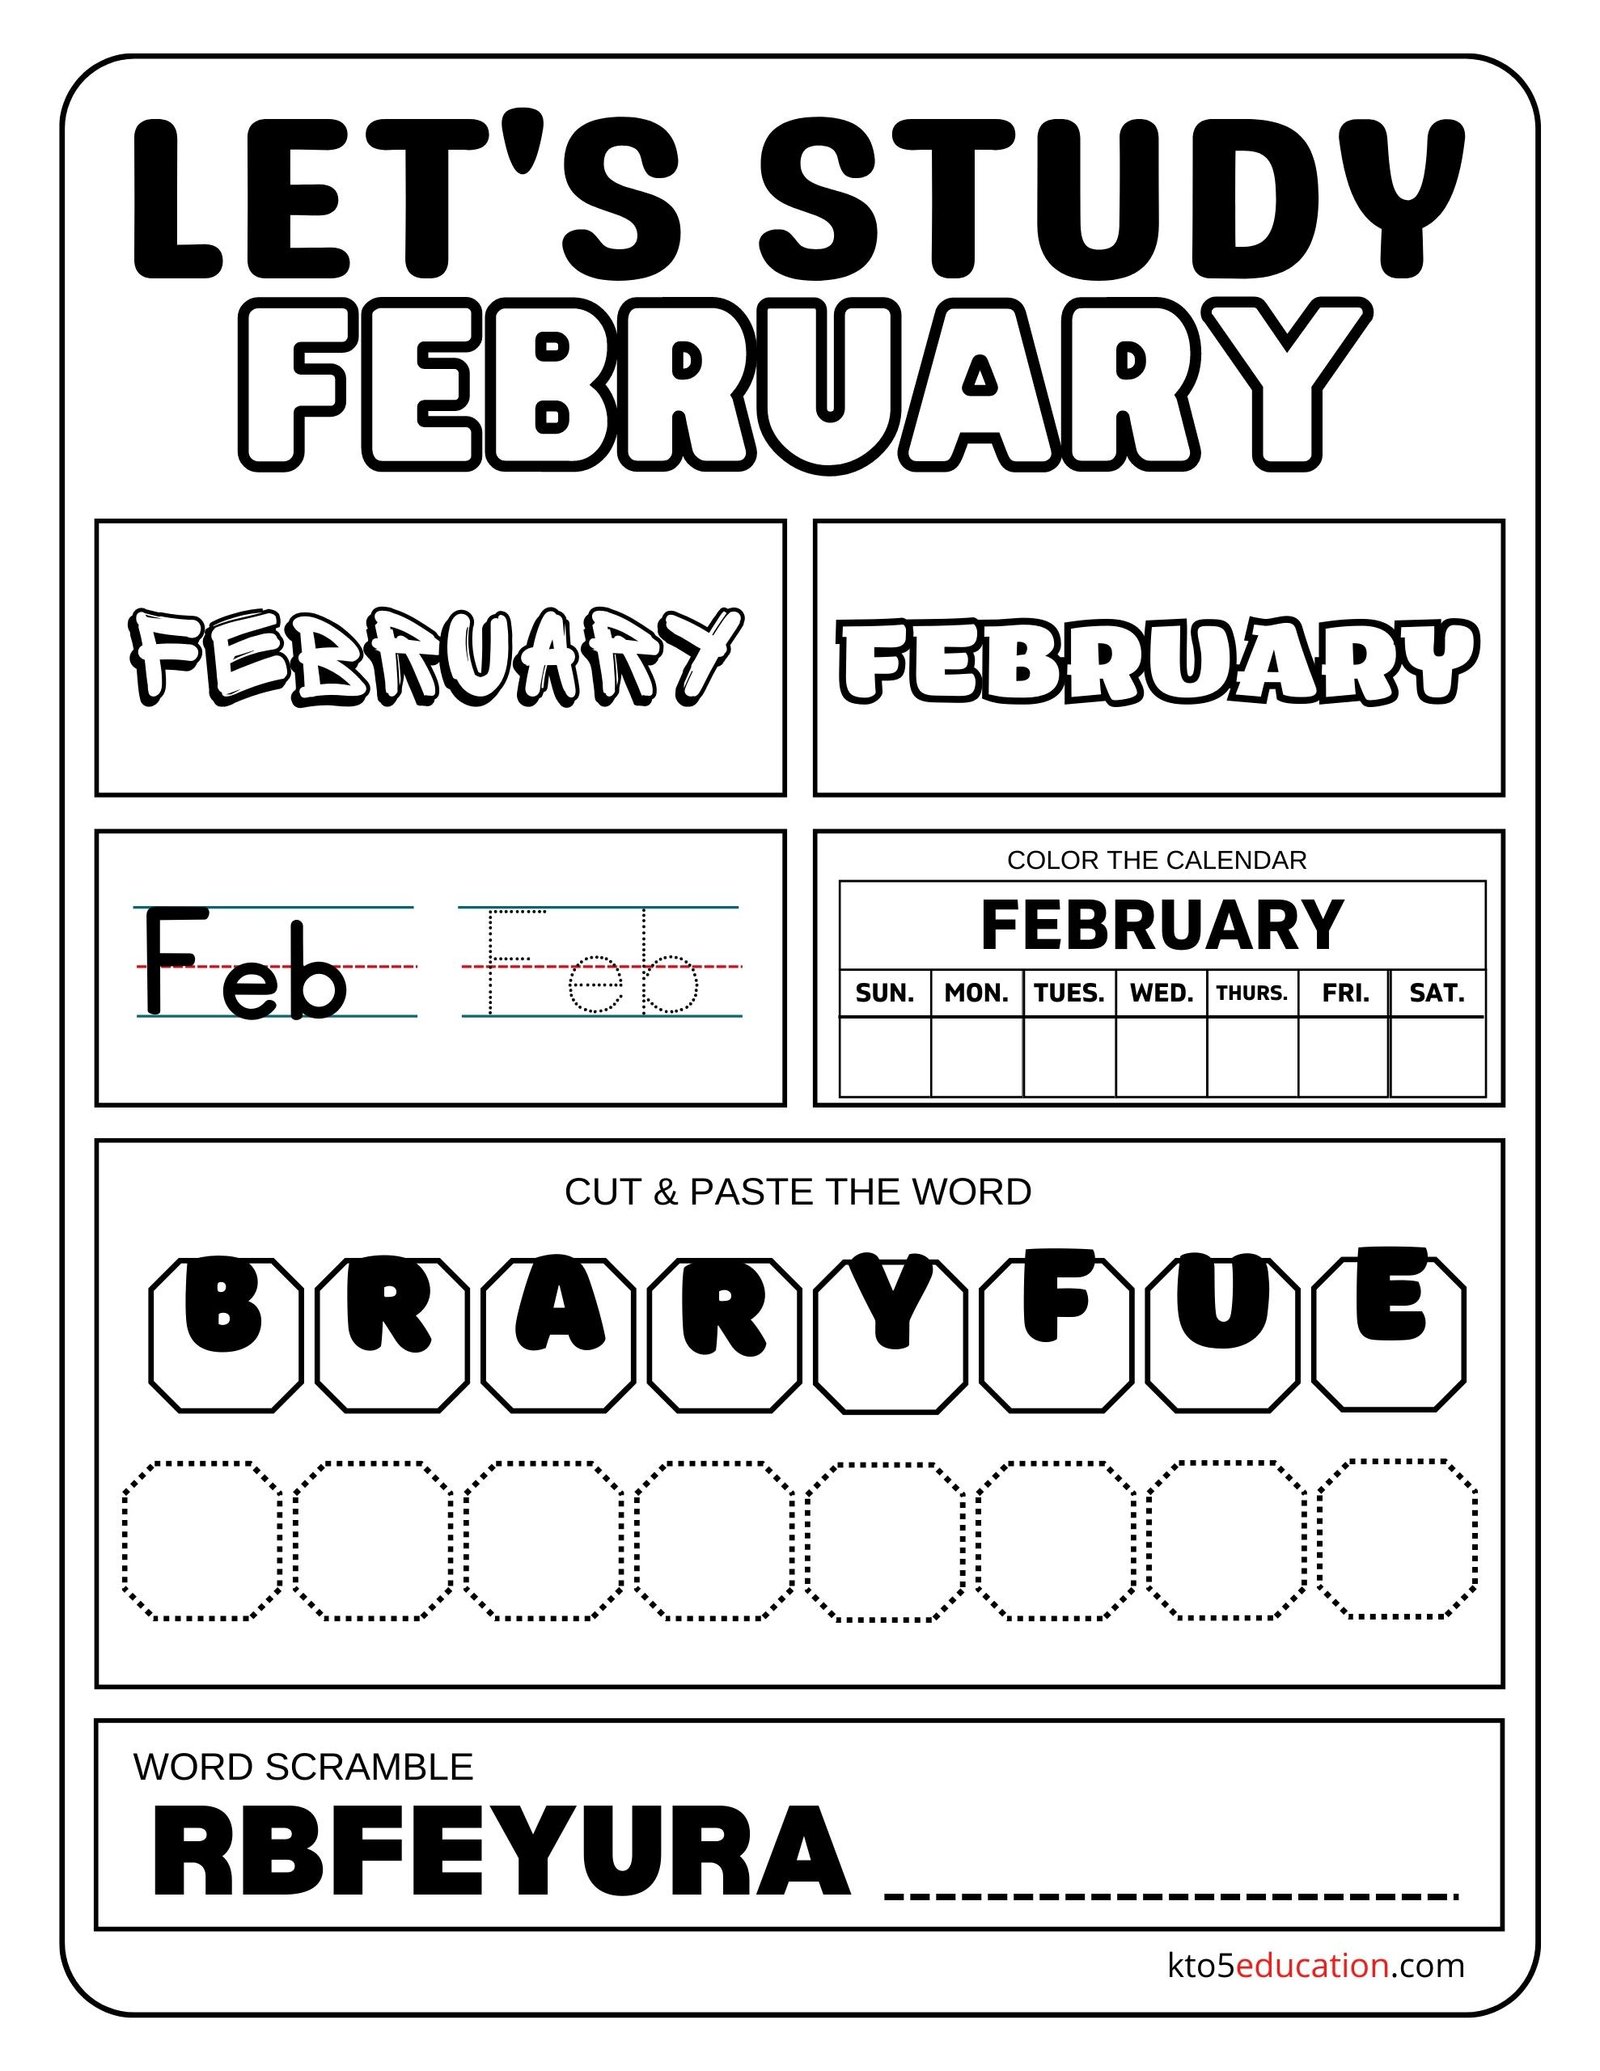 Let's Study February Worksheet